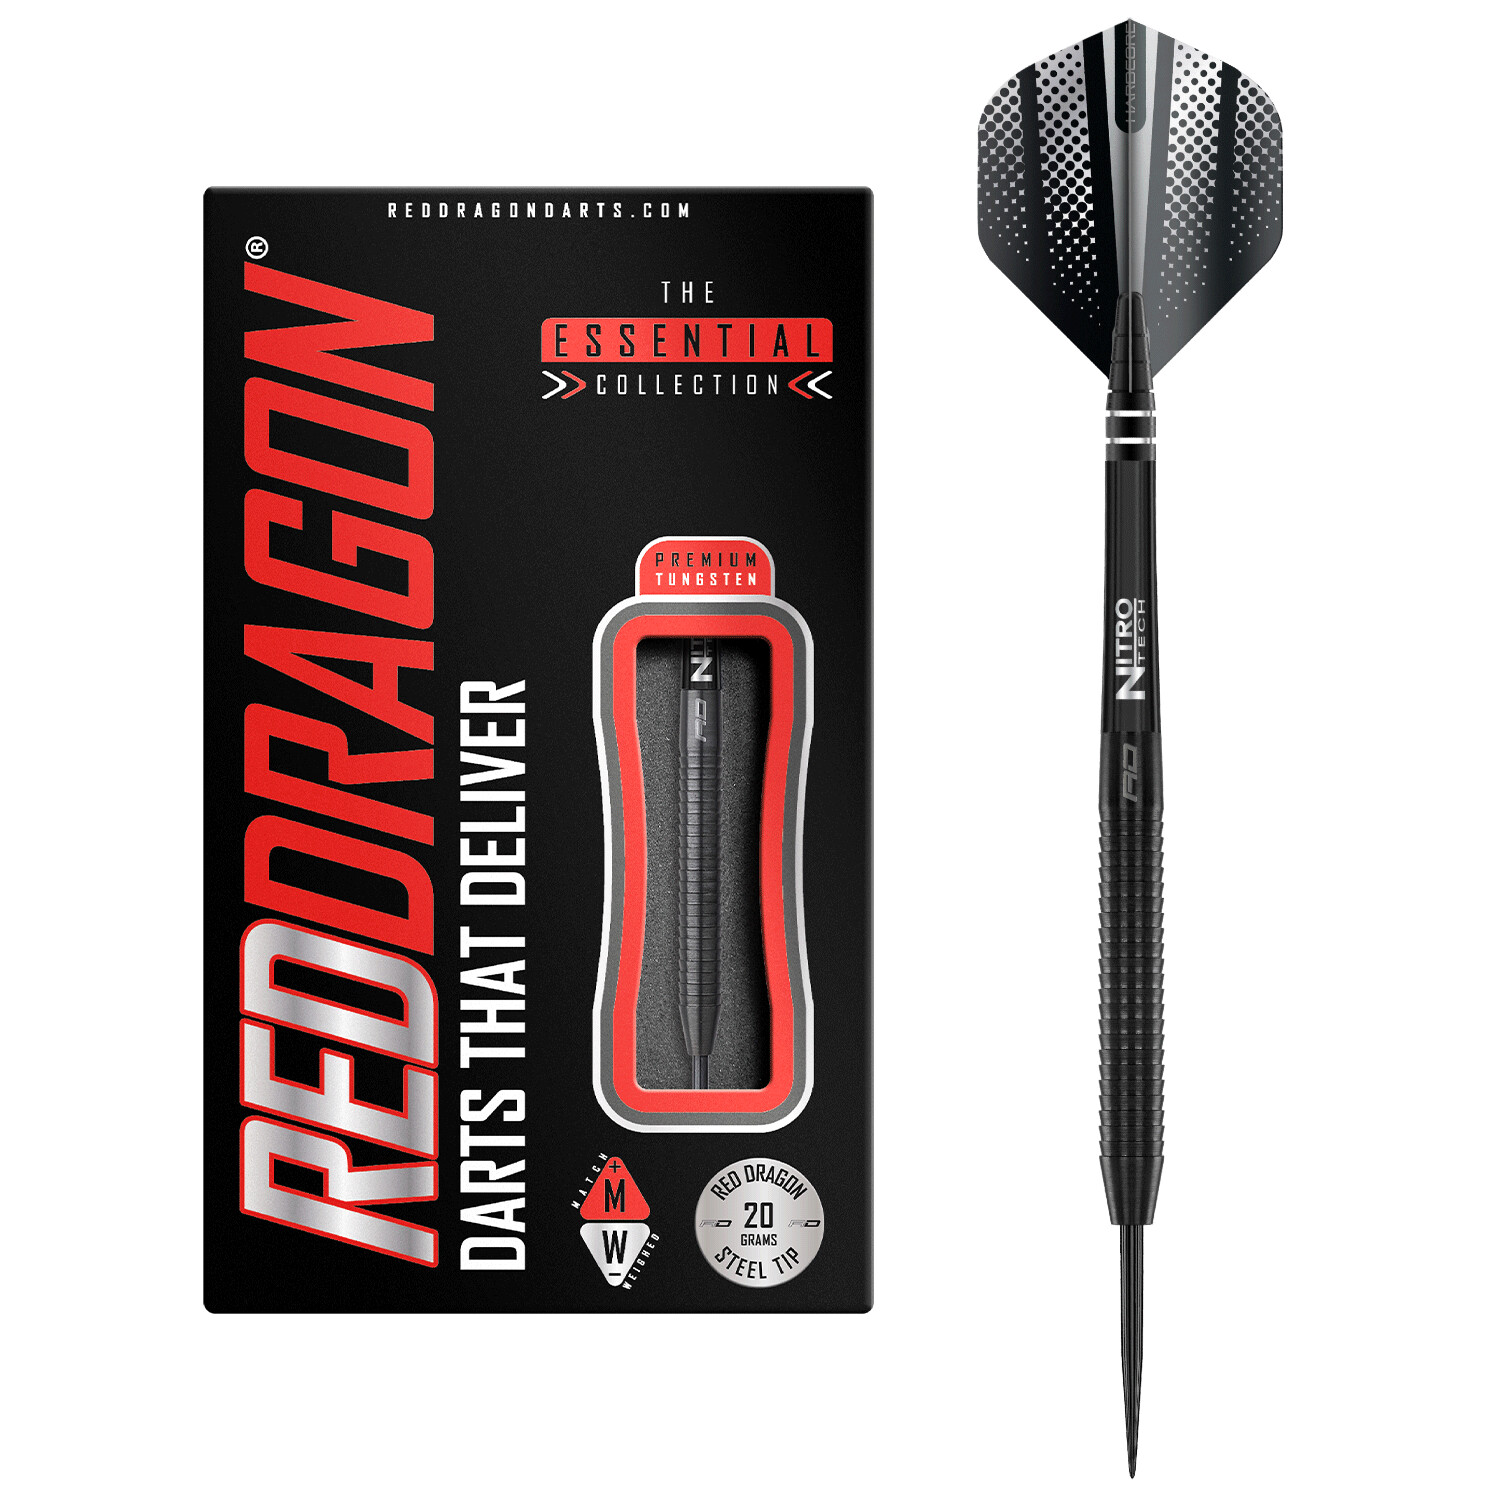 Red Dragon Razor Edge Black 20 Gramm Dartpfeile Tungsten Profi Steel Darts mit Flights und Schäfte ab 39,90 € Preisvergleich bei idealo.de